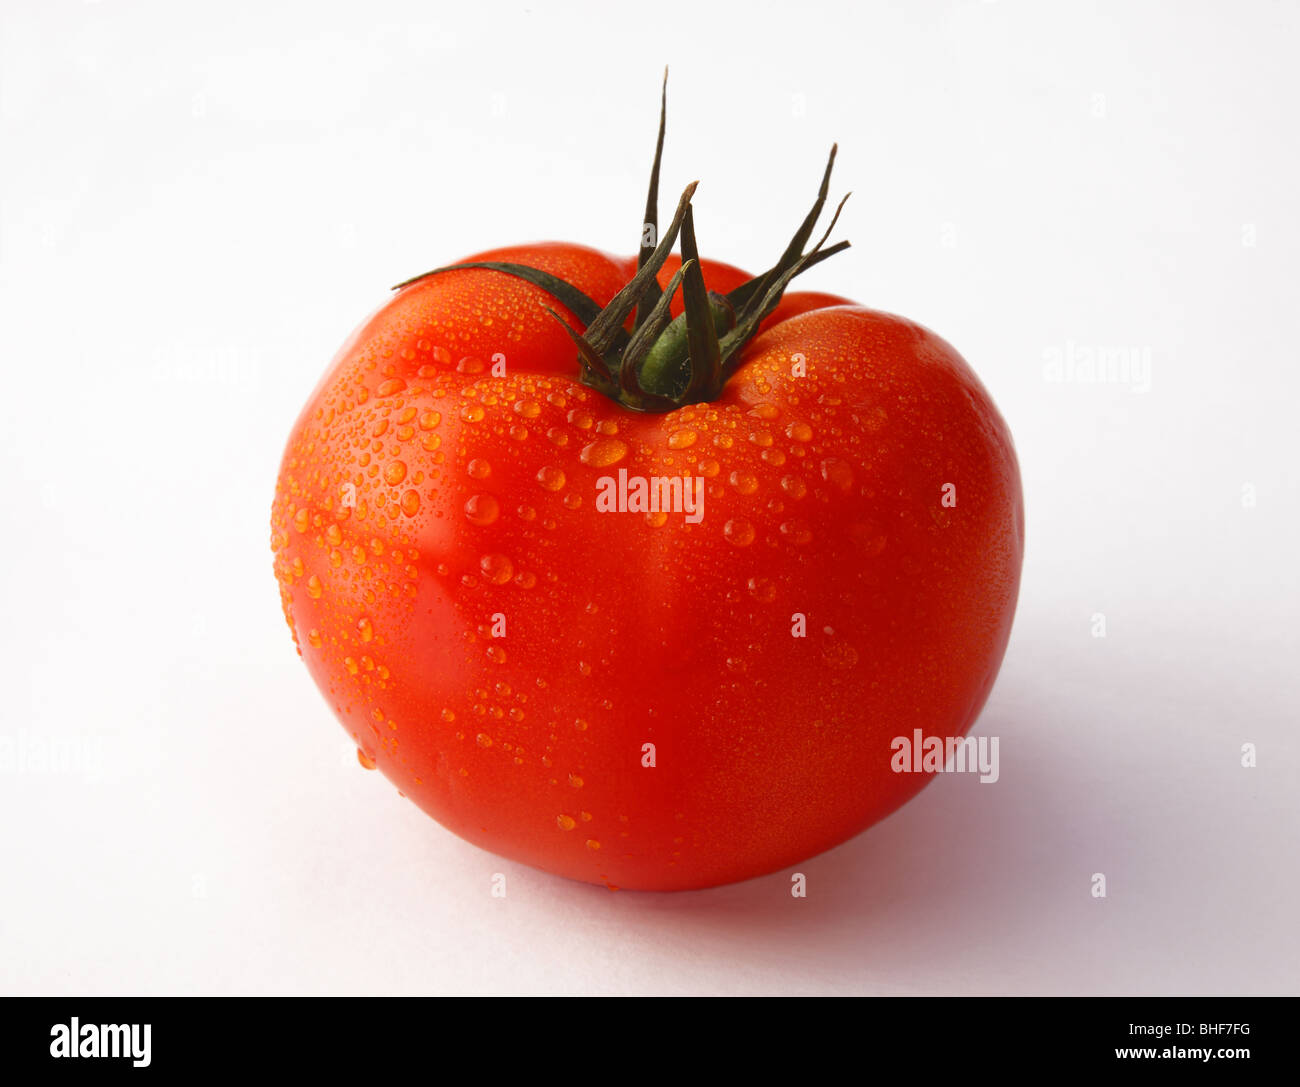 Grand, frais, mûr, rouge, juteuse, tomates biologiques sur fond blanc. Banque D'Images